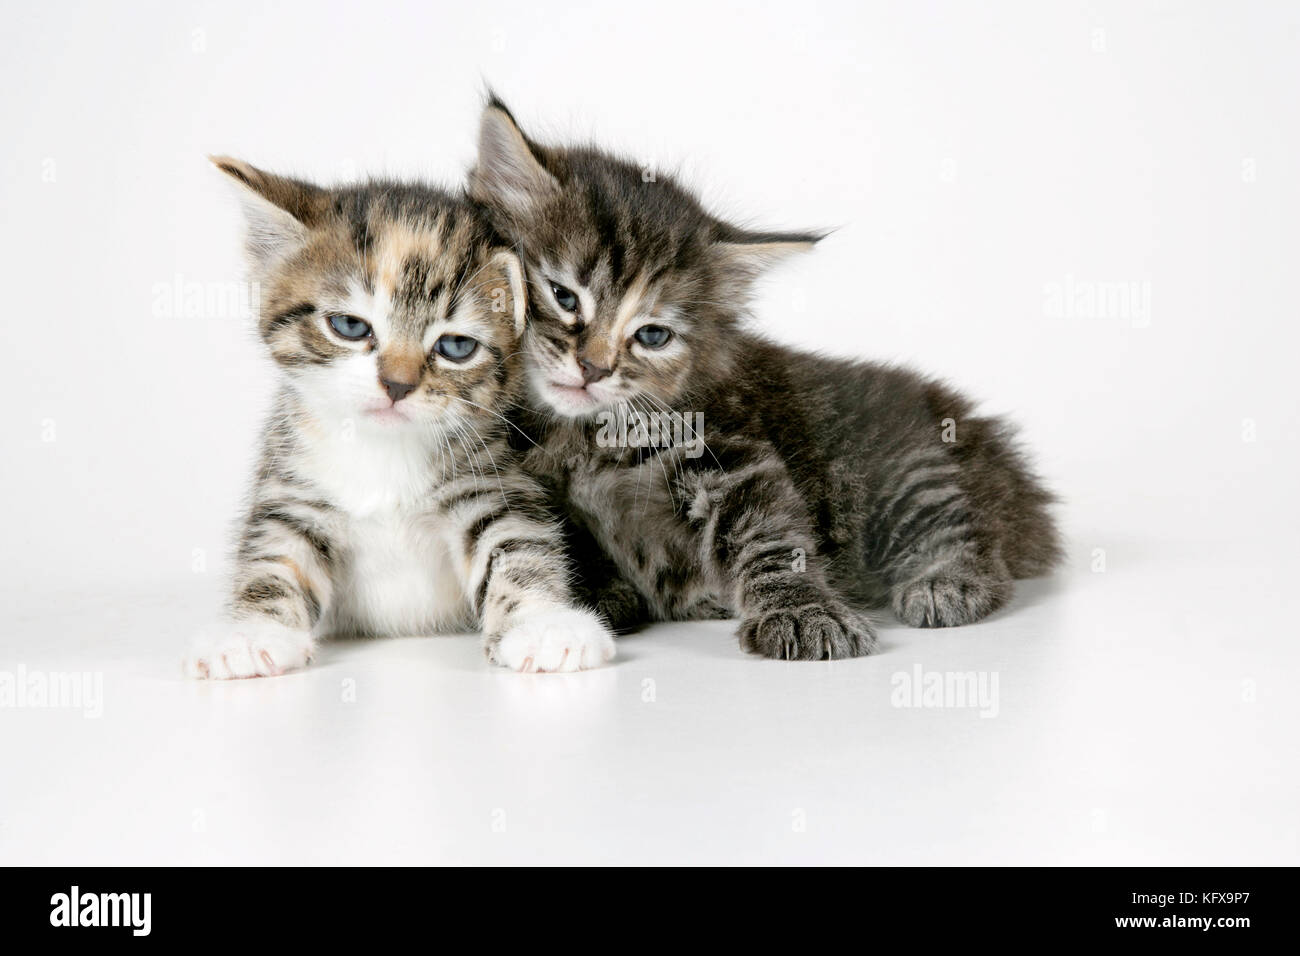 Katze - zwei schläfrige Kätzchen, die aufeinander liegen Stockfoto